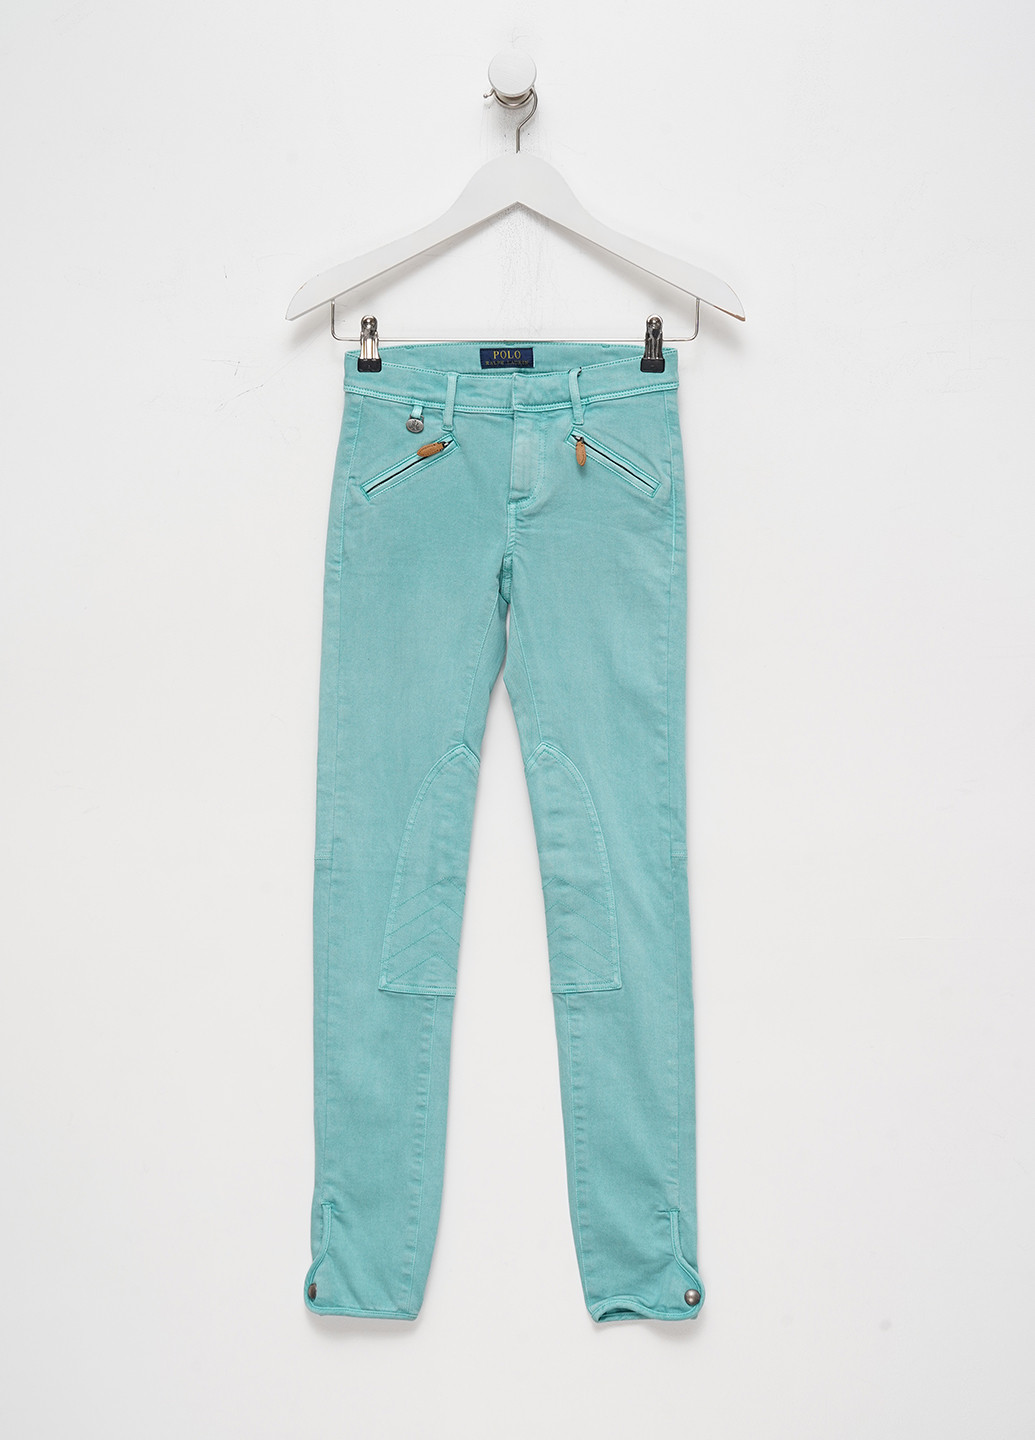 Мятные джинсовые демисезонные зауженные брюки Ralph Lauren